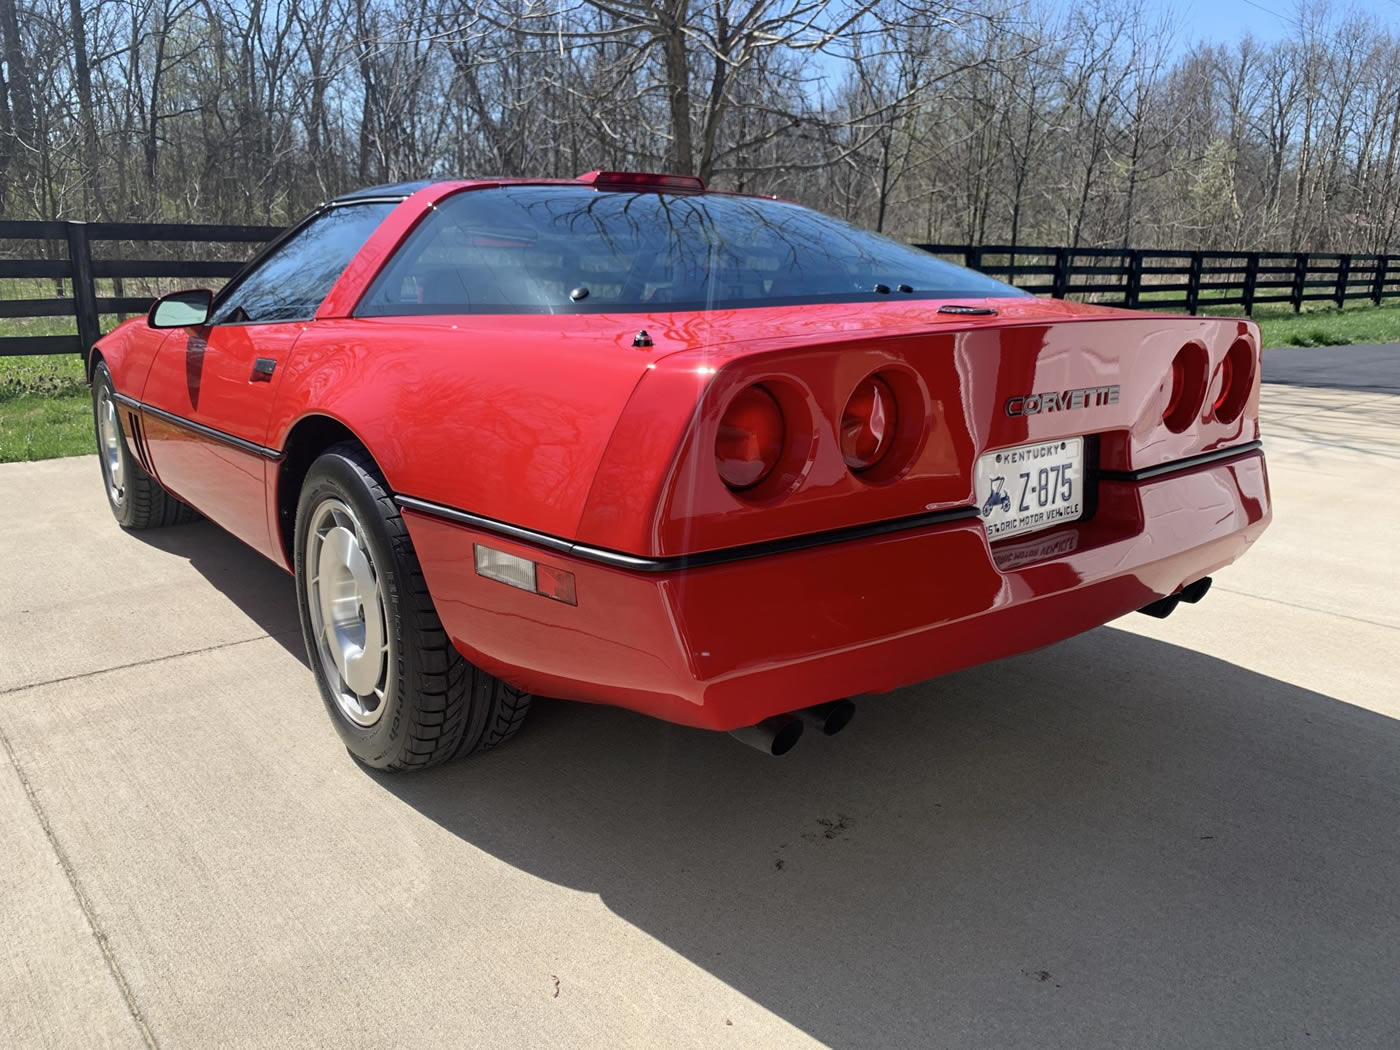 1986 Corvette Coupe in Bright Red